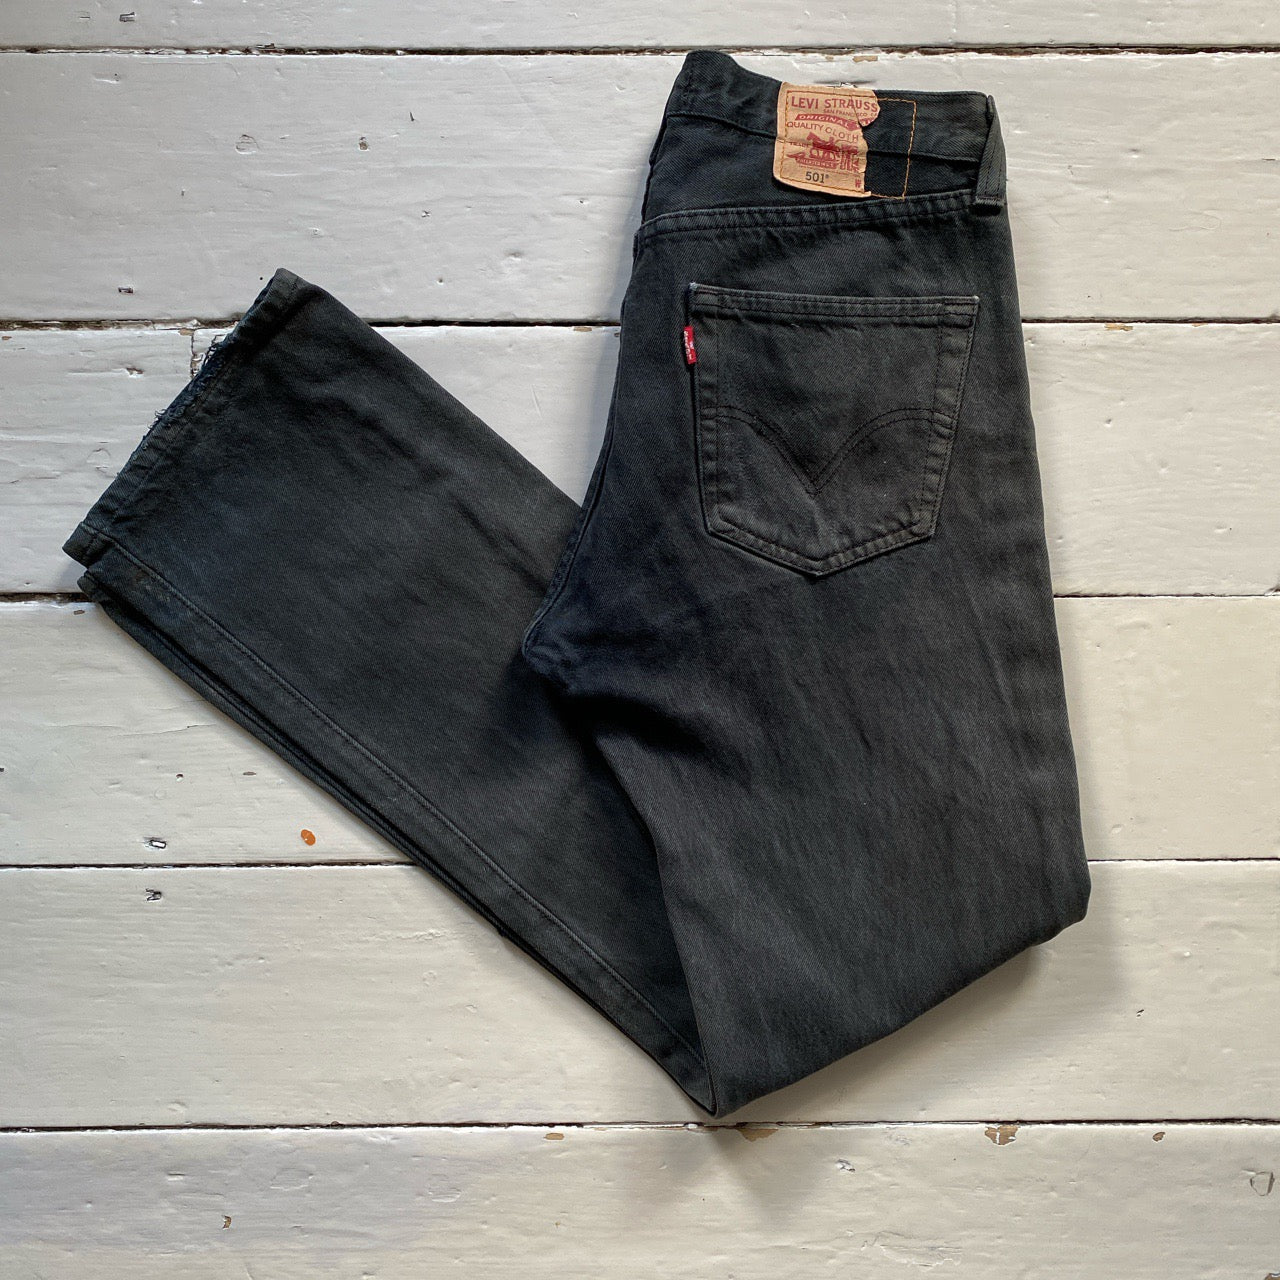 Levis Charcoal 501 Jeans (32/32)